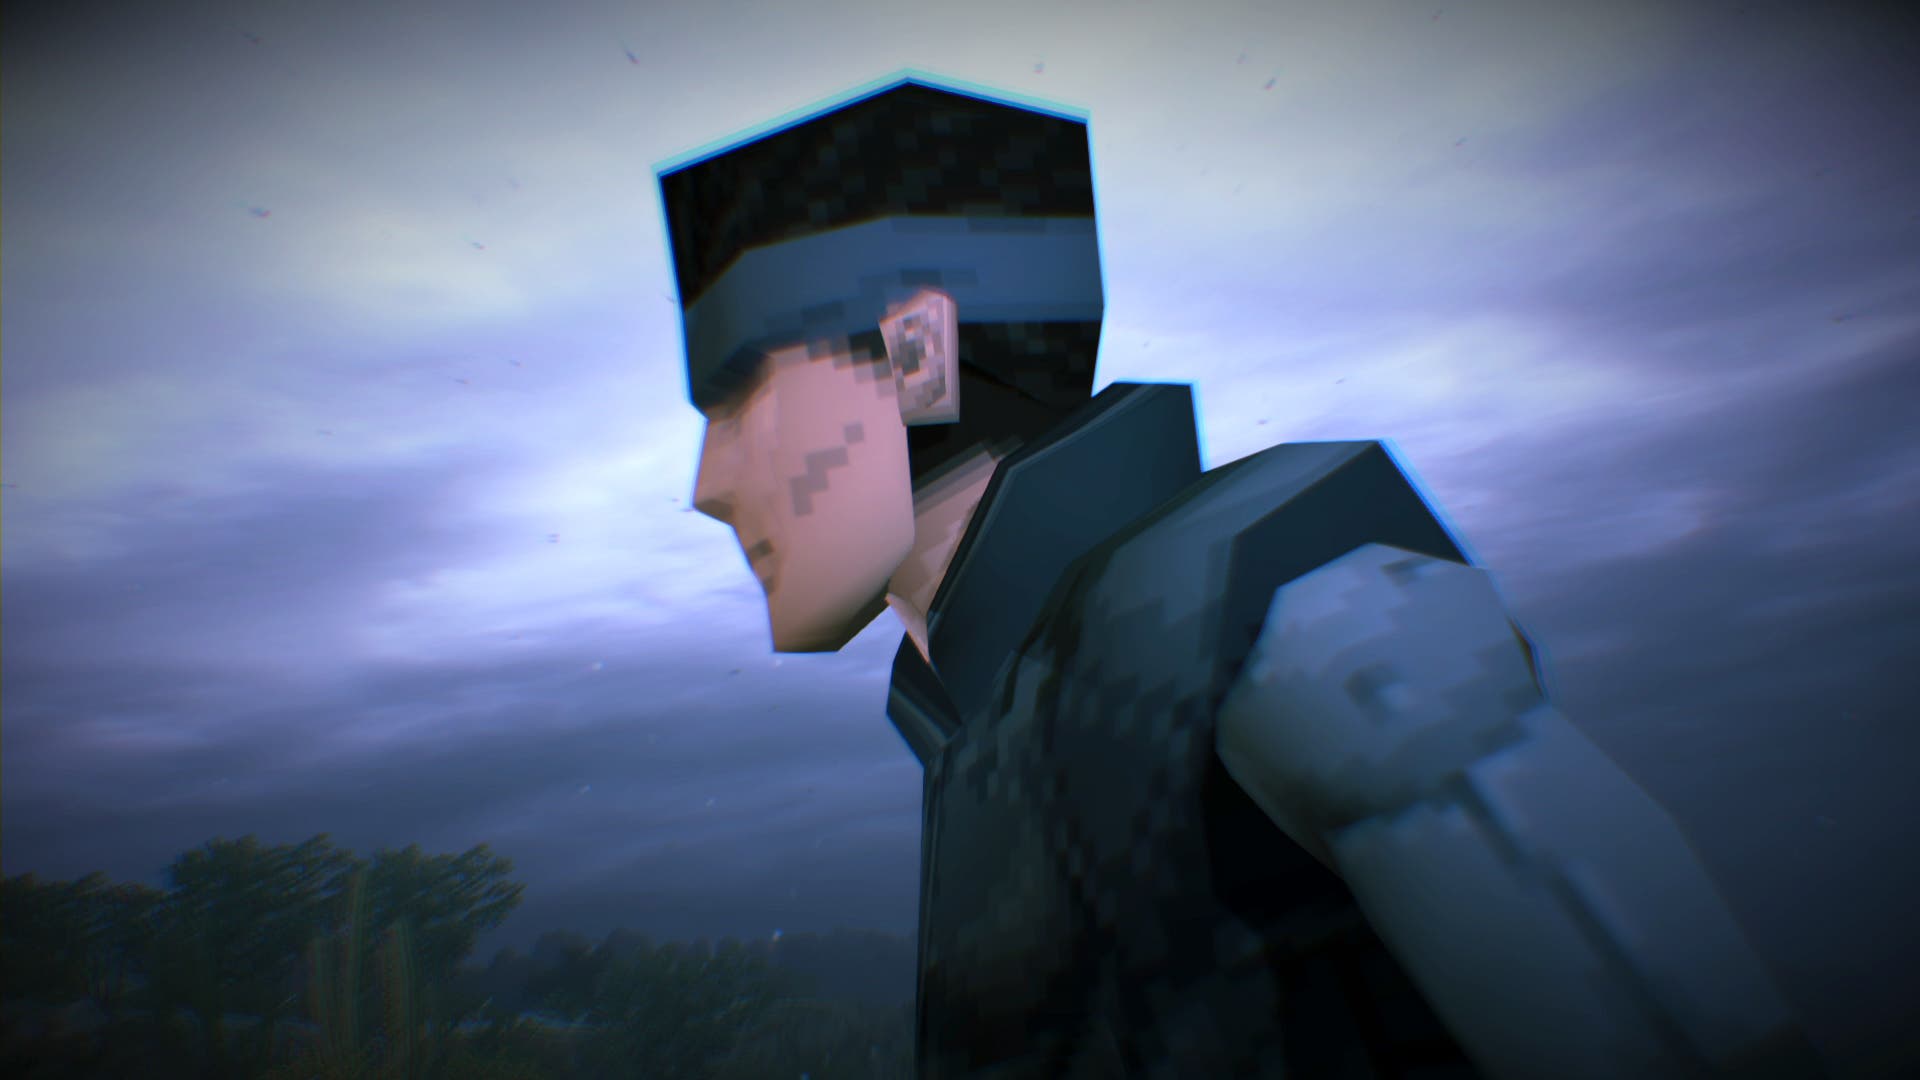 Tras Metal Gear Solid Delta, ¿cuáles podrían ser los próximos remakes de Metal  Gear?